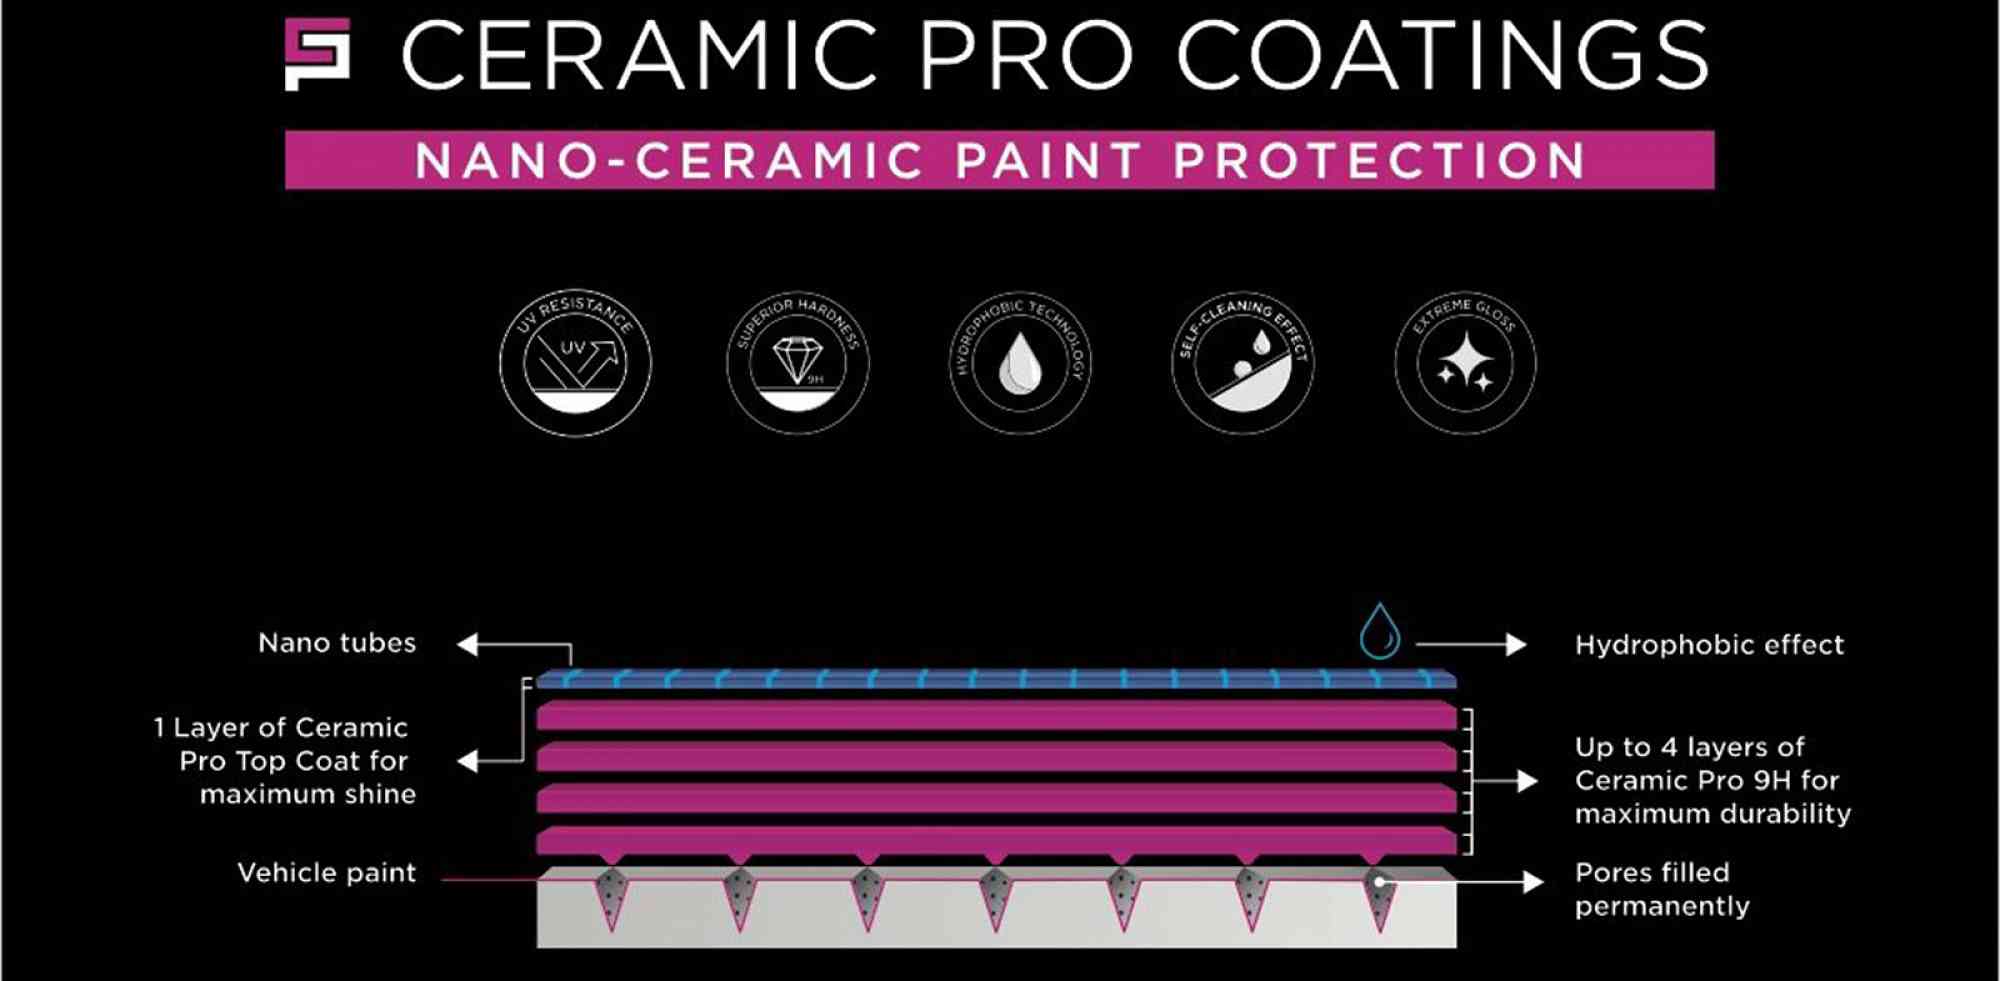 Ceramic Pro Coatings